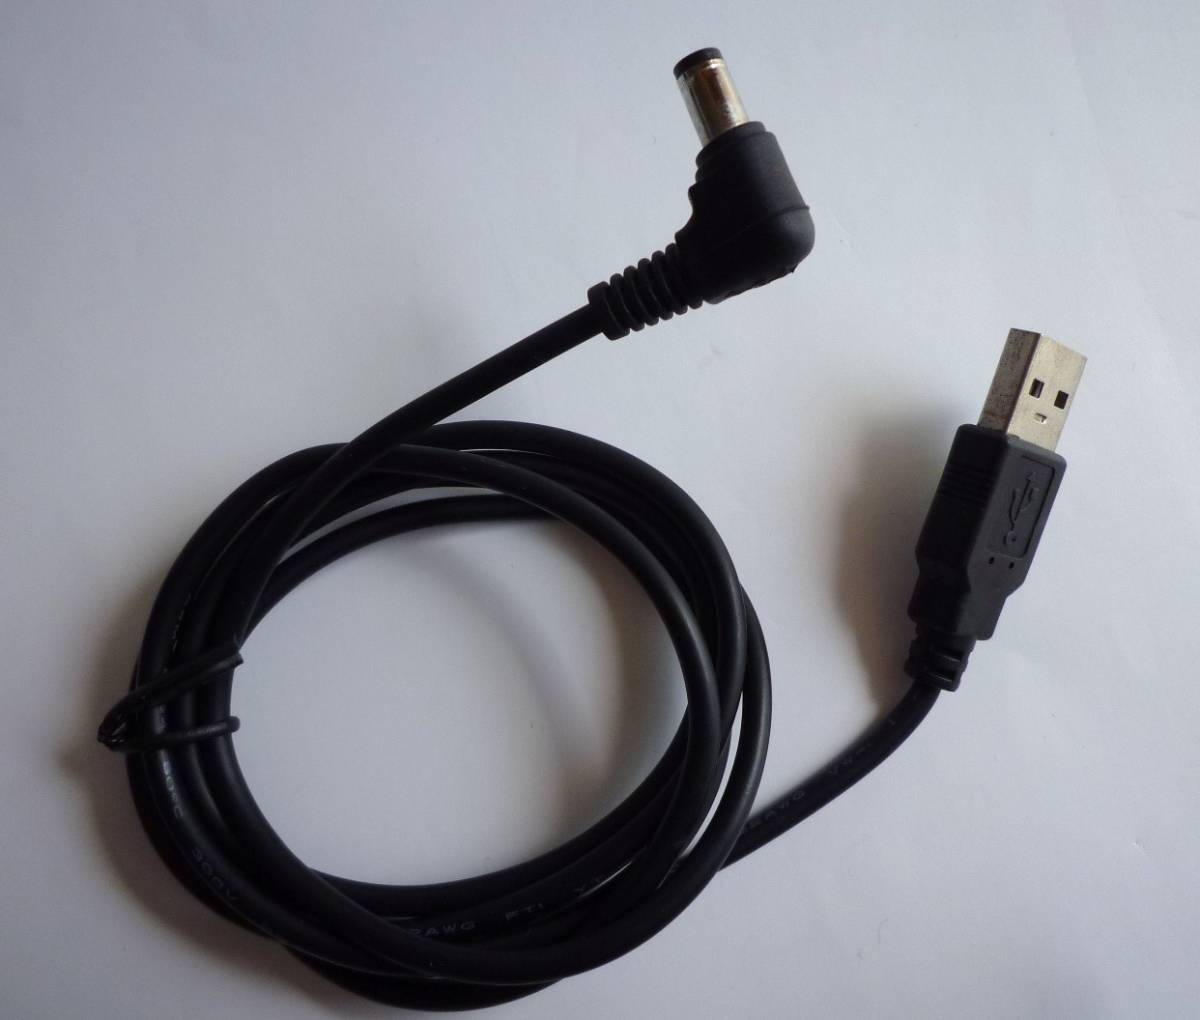 USB-DC кабель DC кабель DC код 1.2m φ5.5.DC штекер мужской - USB мужской DC электрический кабель чёрный черный USB кабель ②